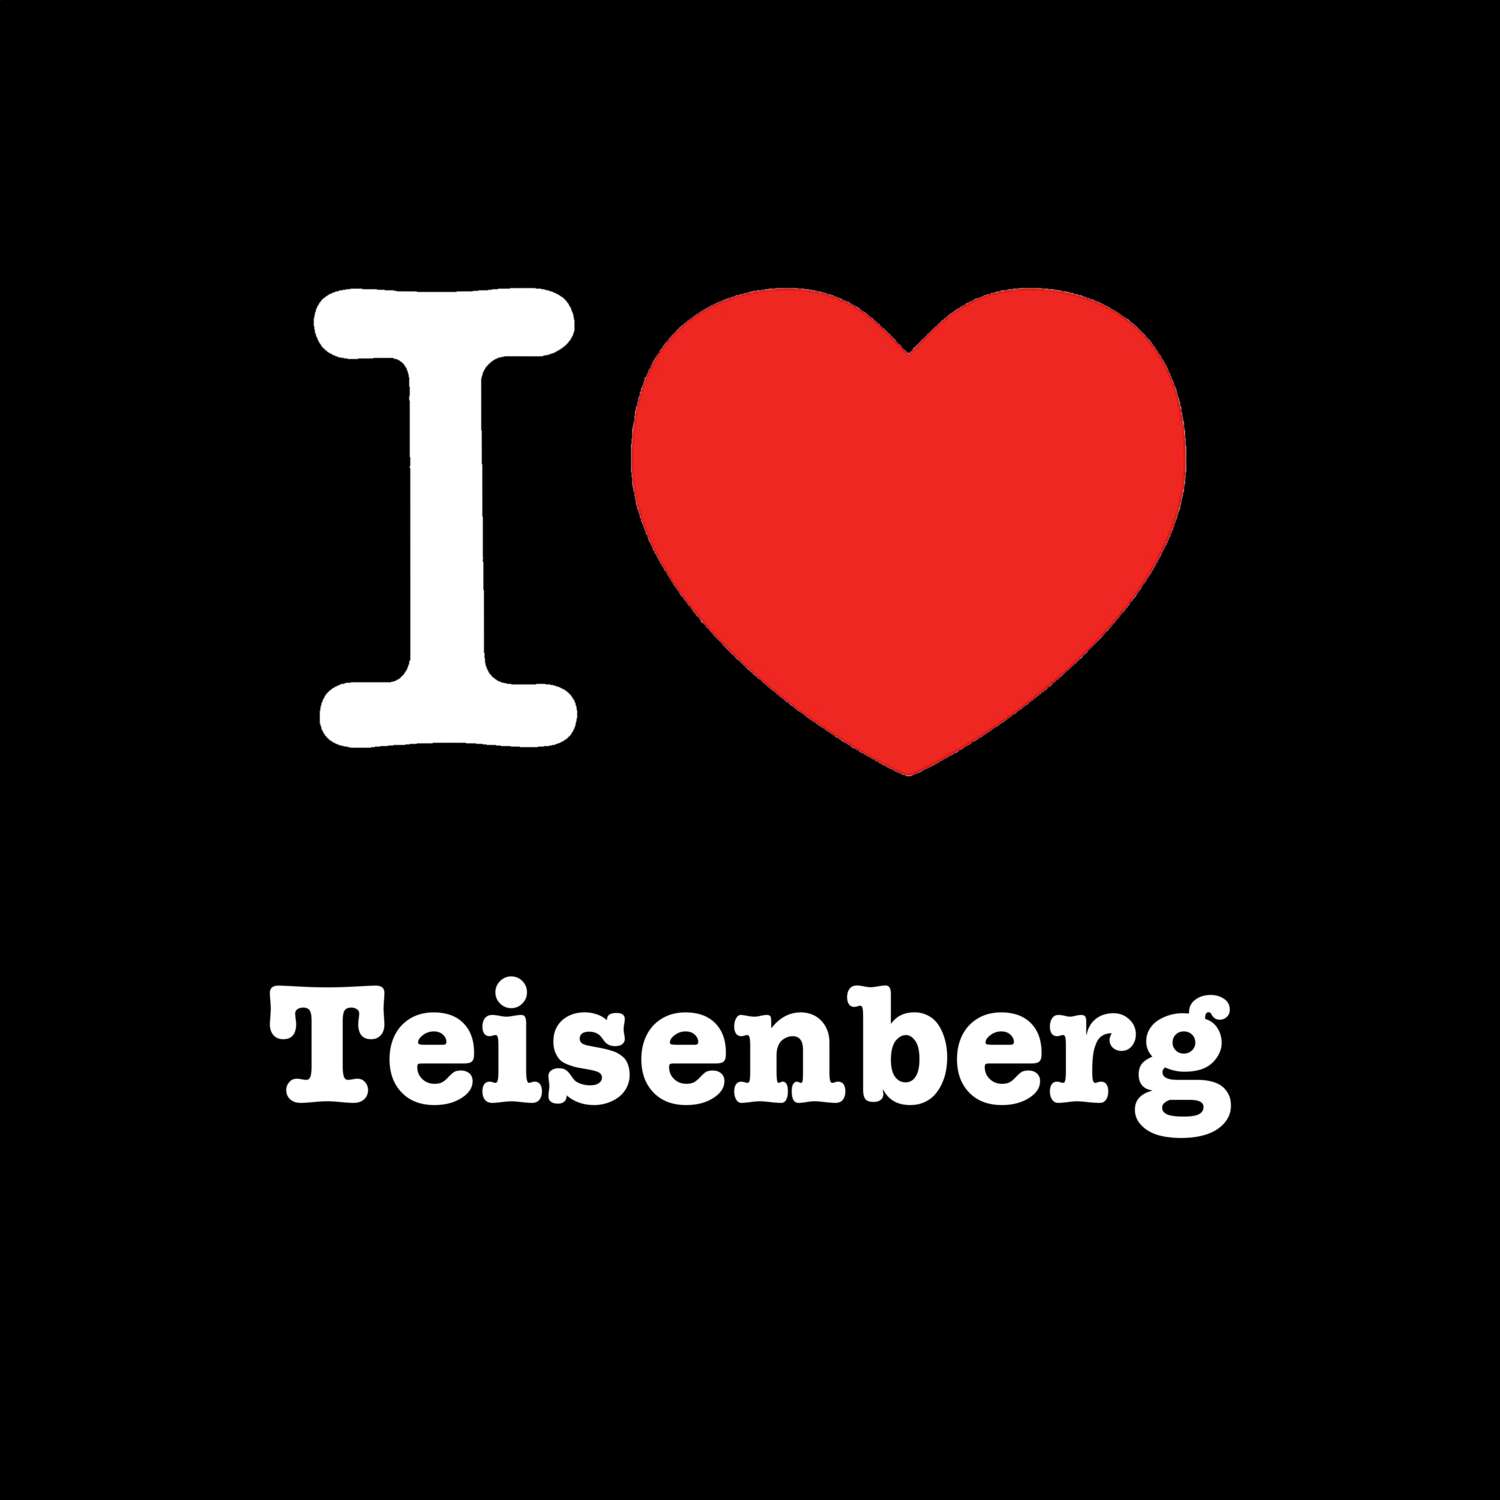 Teisenberg T-Shirt »I love«